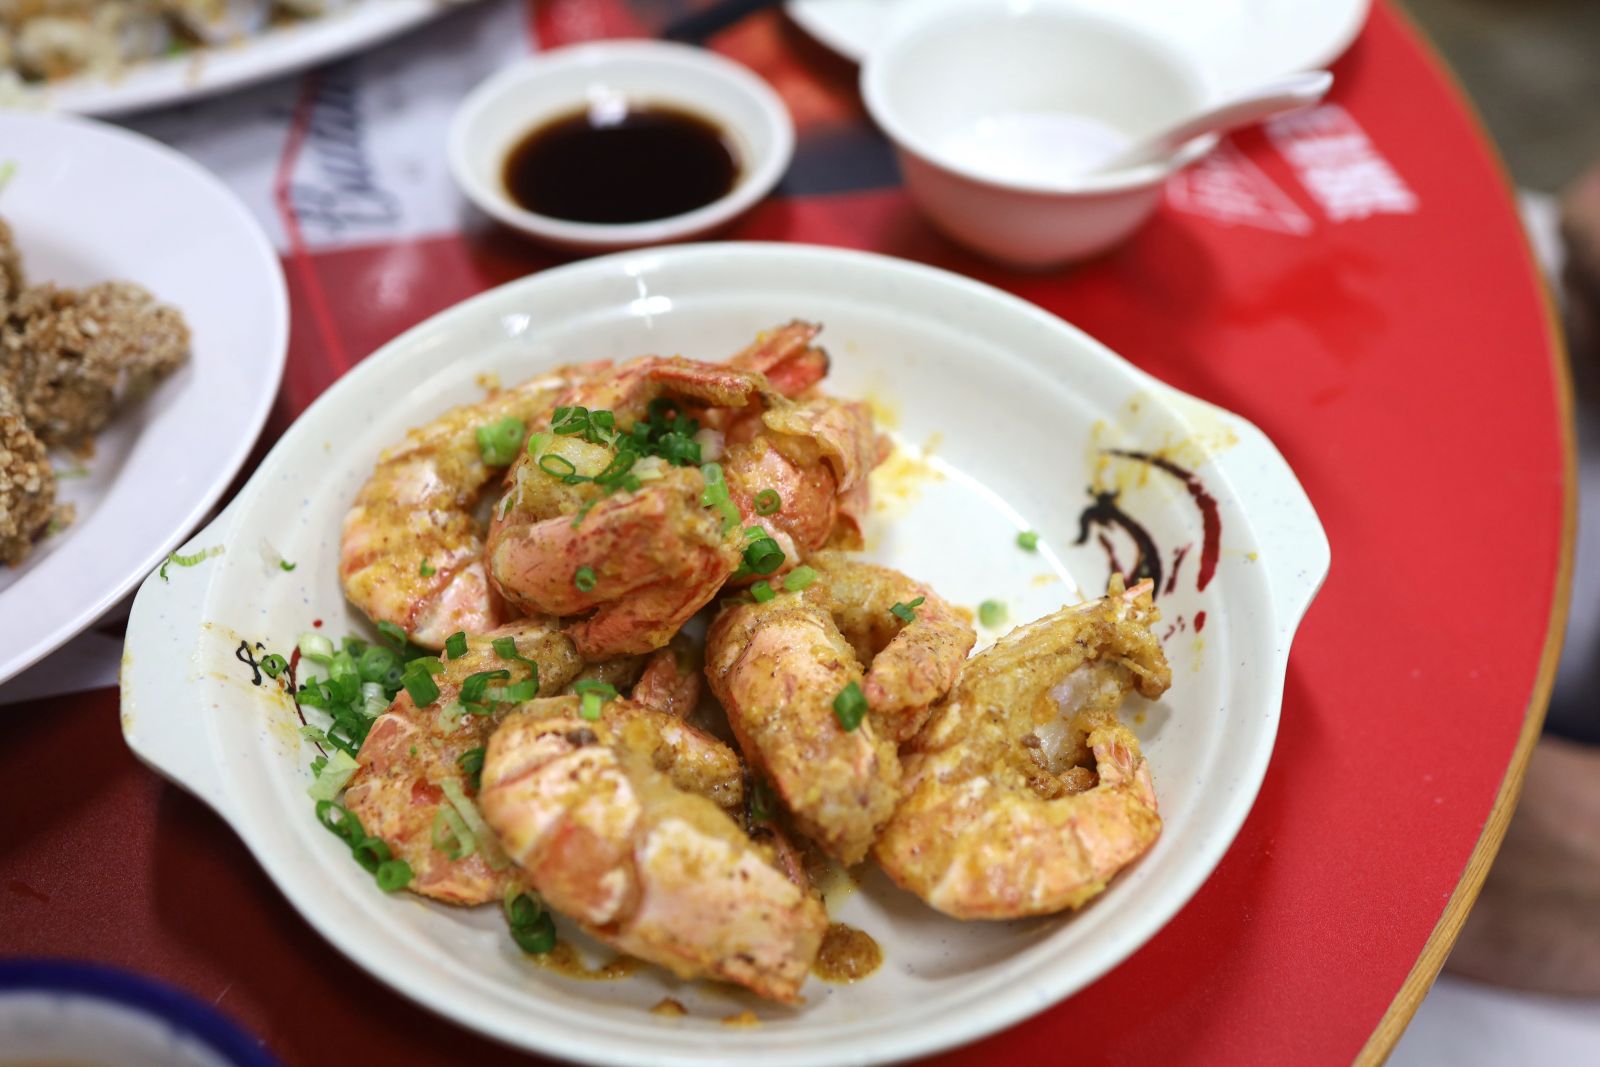 Fried shrimps coated in salted egg yolk